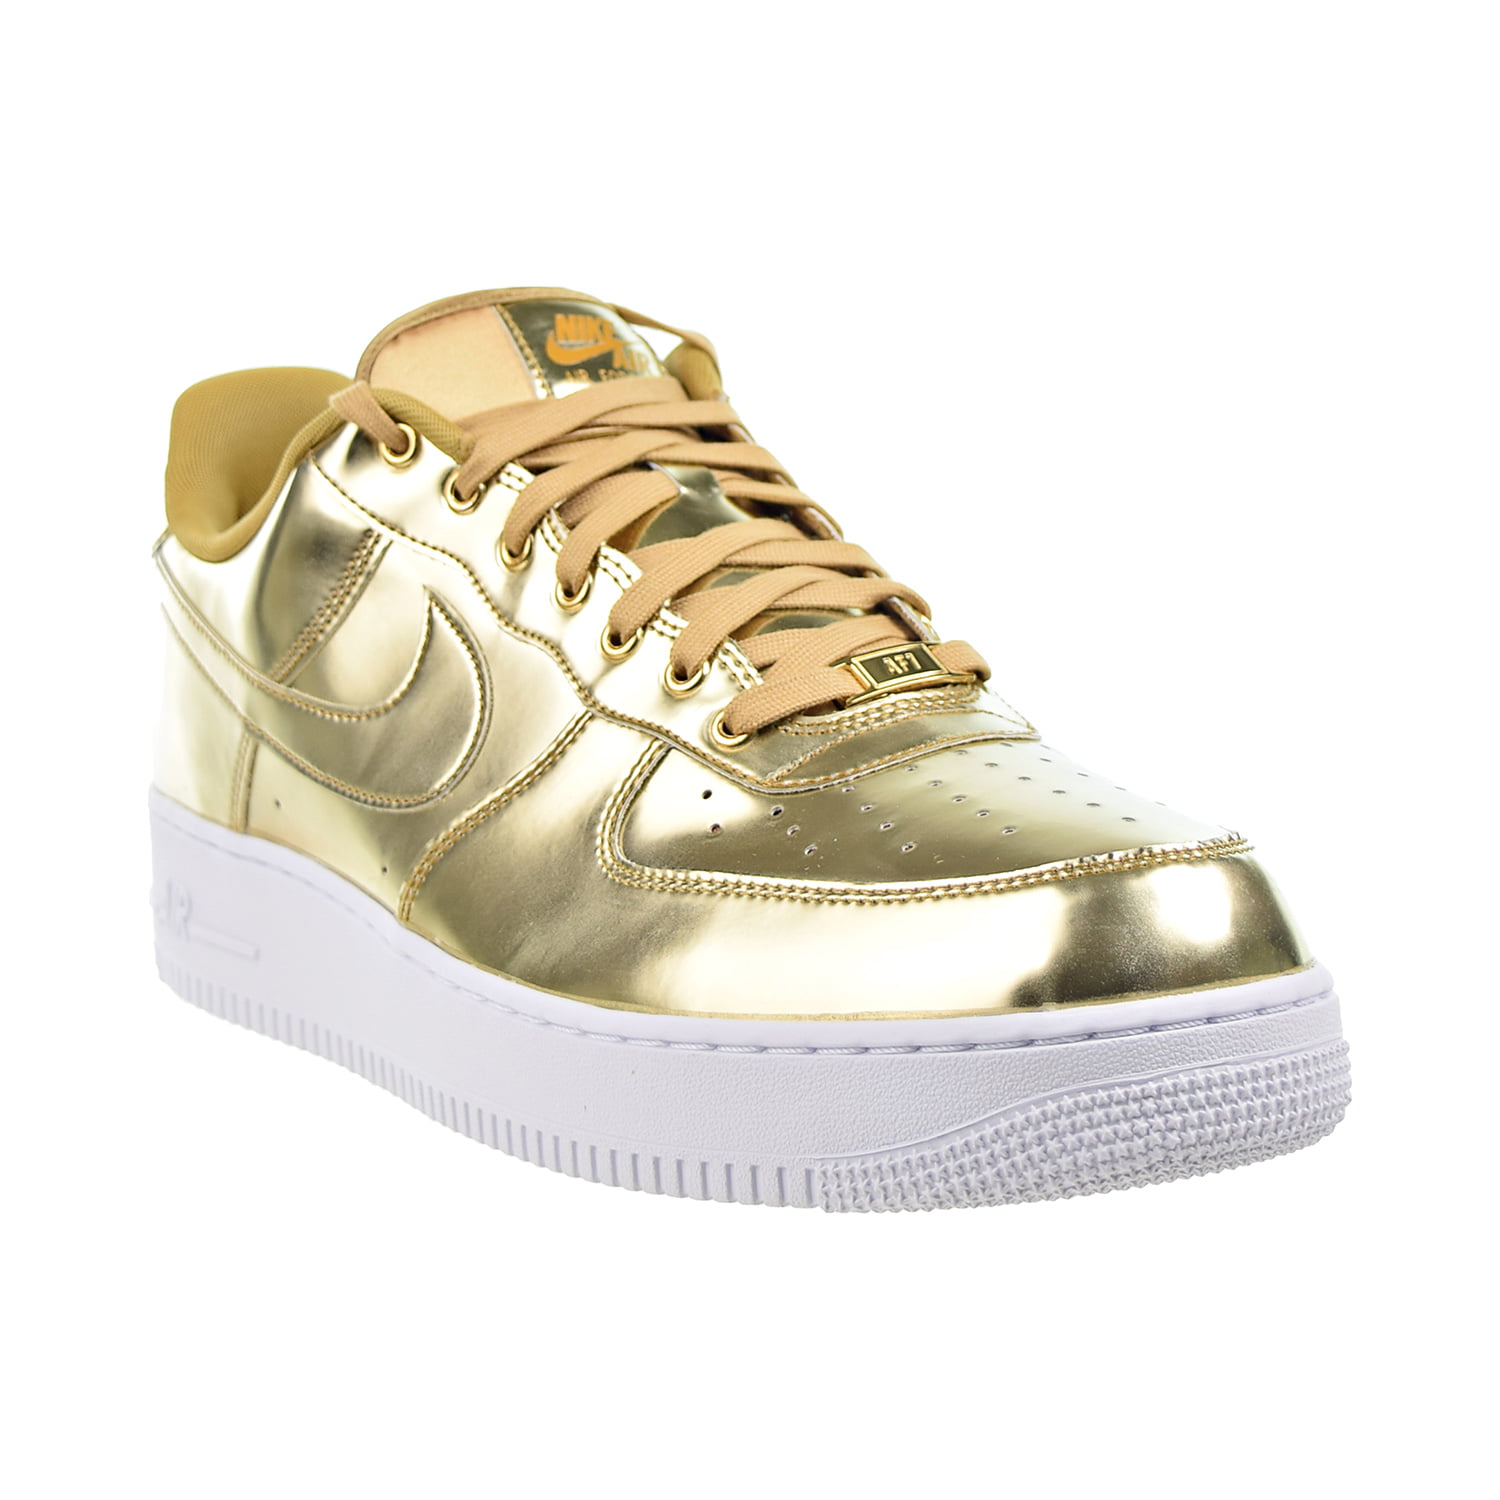 Buy NikeLab Air Force 1 High 'Metallic Gold' - 823297 700